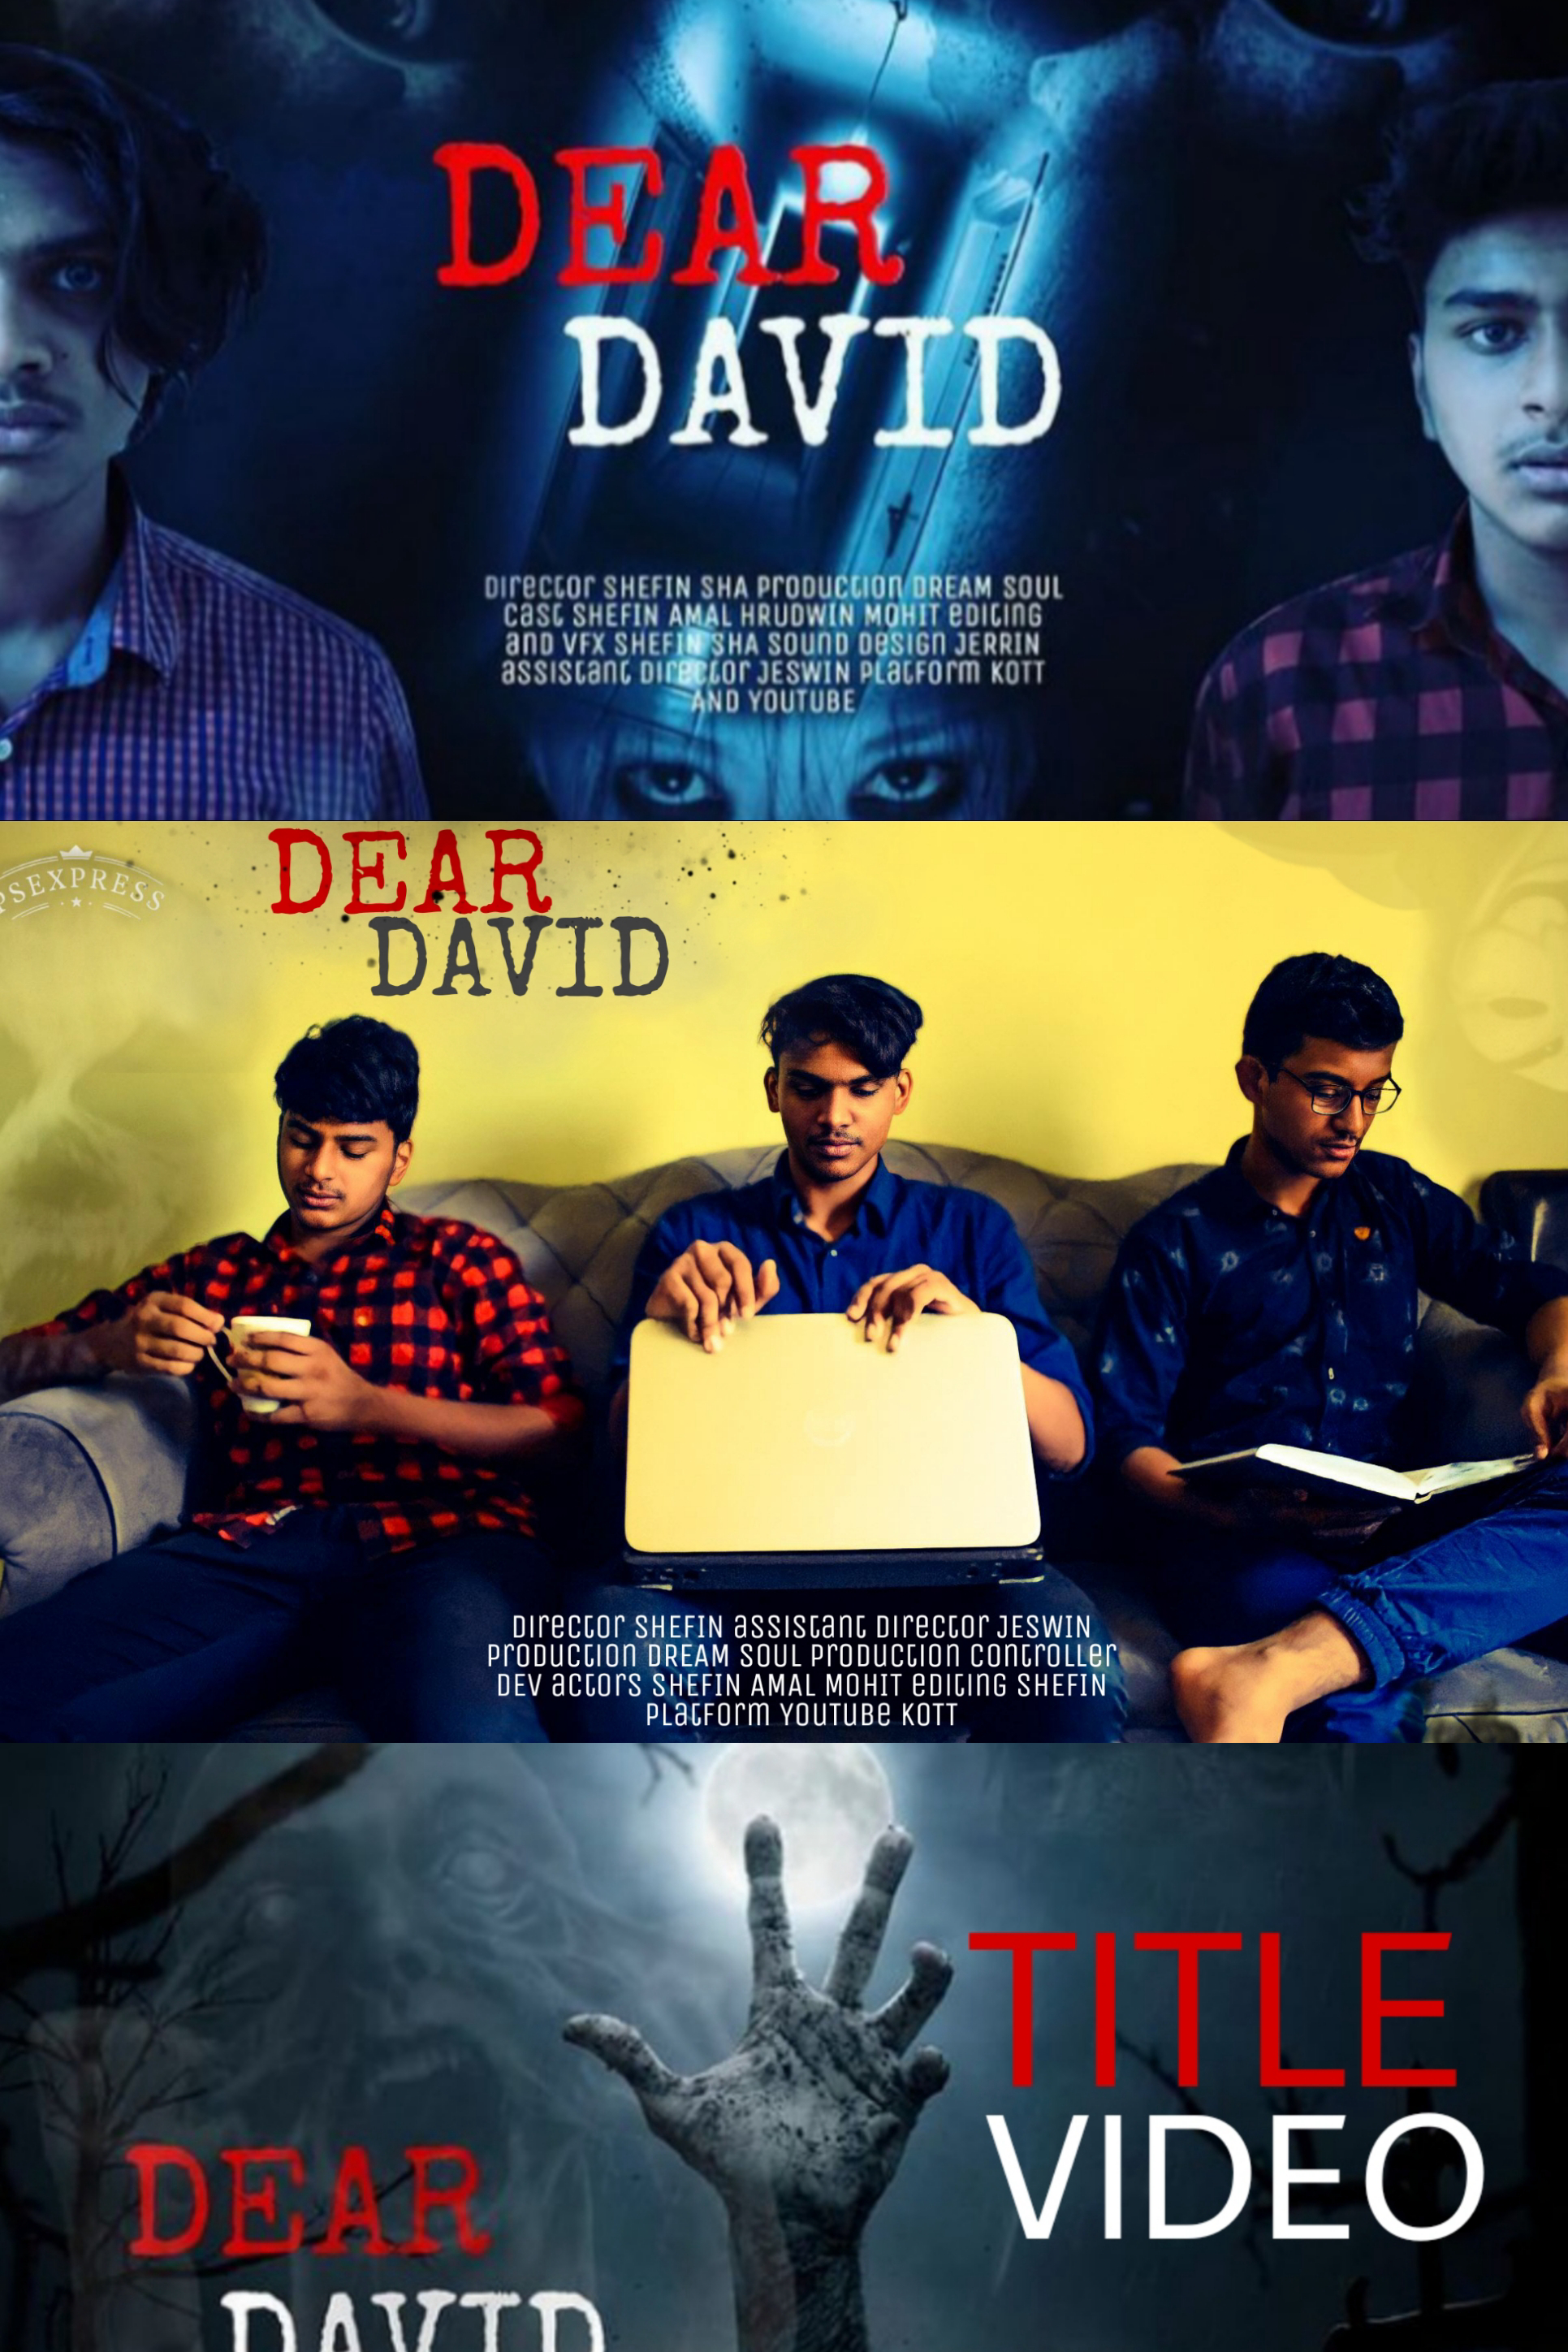 Dear David - Dear David